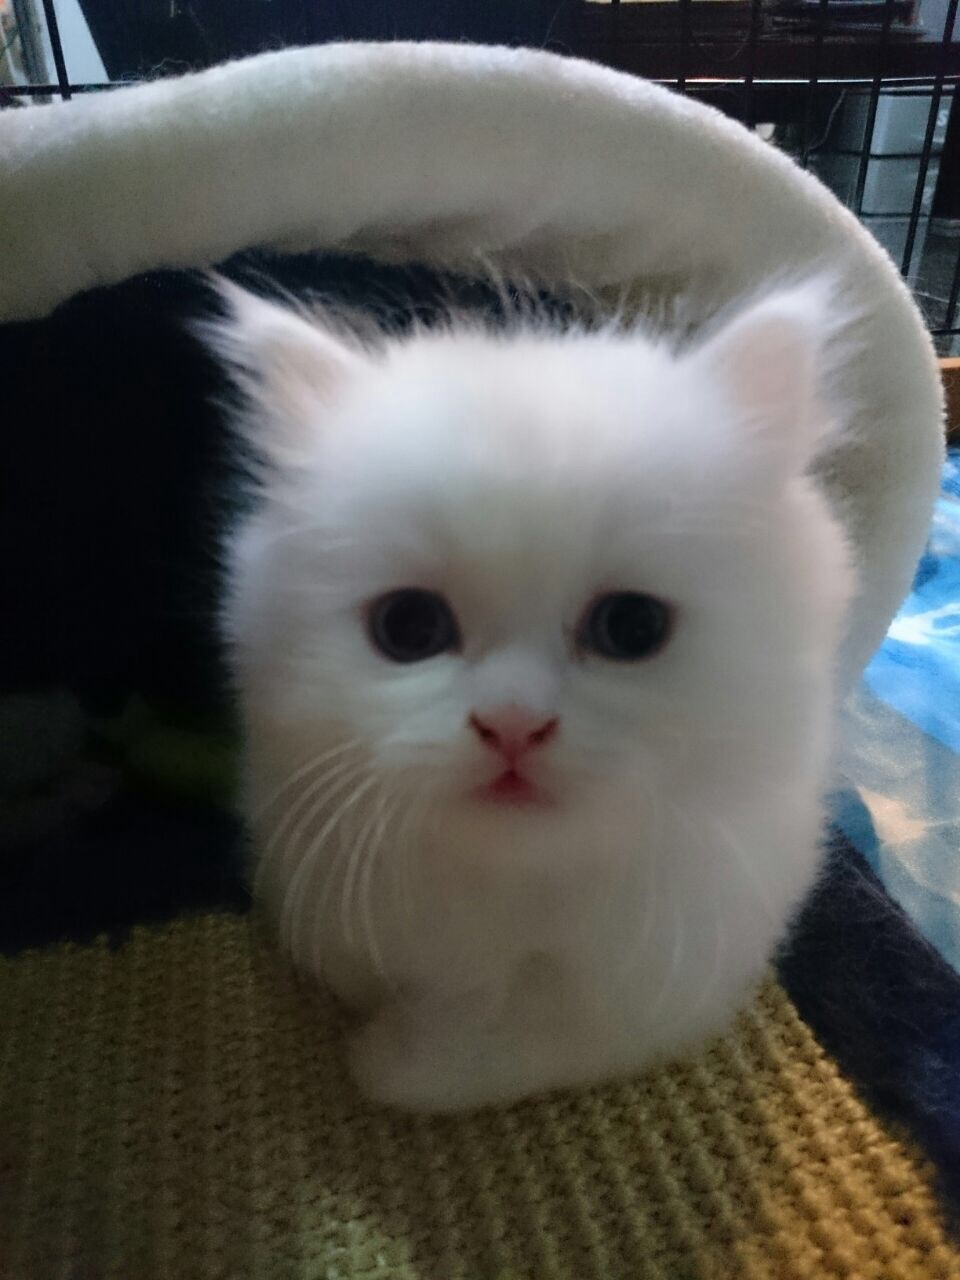 ลูกแมวเปอร์เซียสีขาวล้วน หน้าตุ๊กตา เพศผู้ อายุ 2 เดือน รูปที่ 1